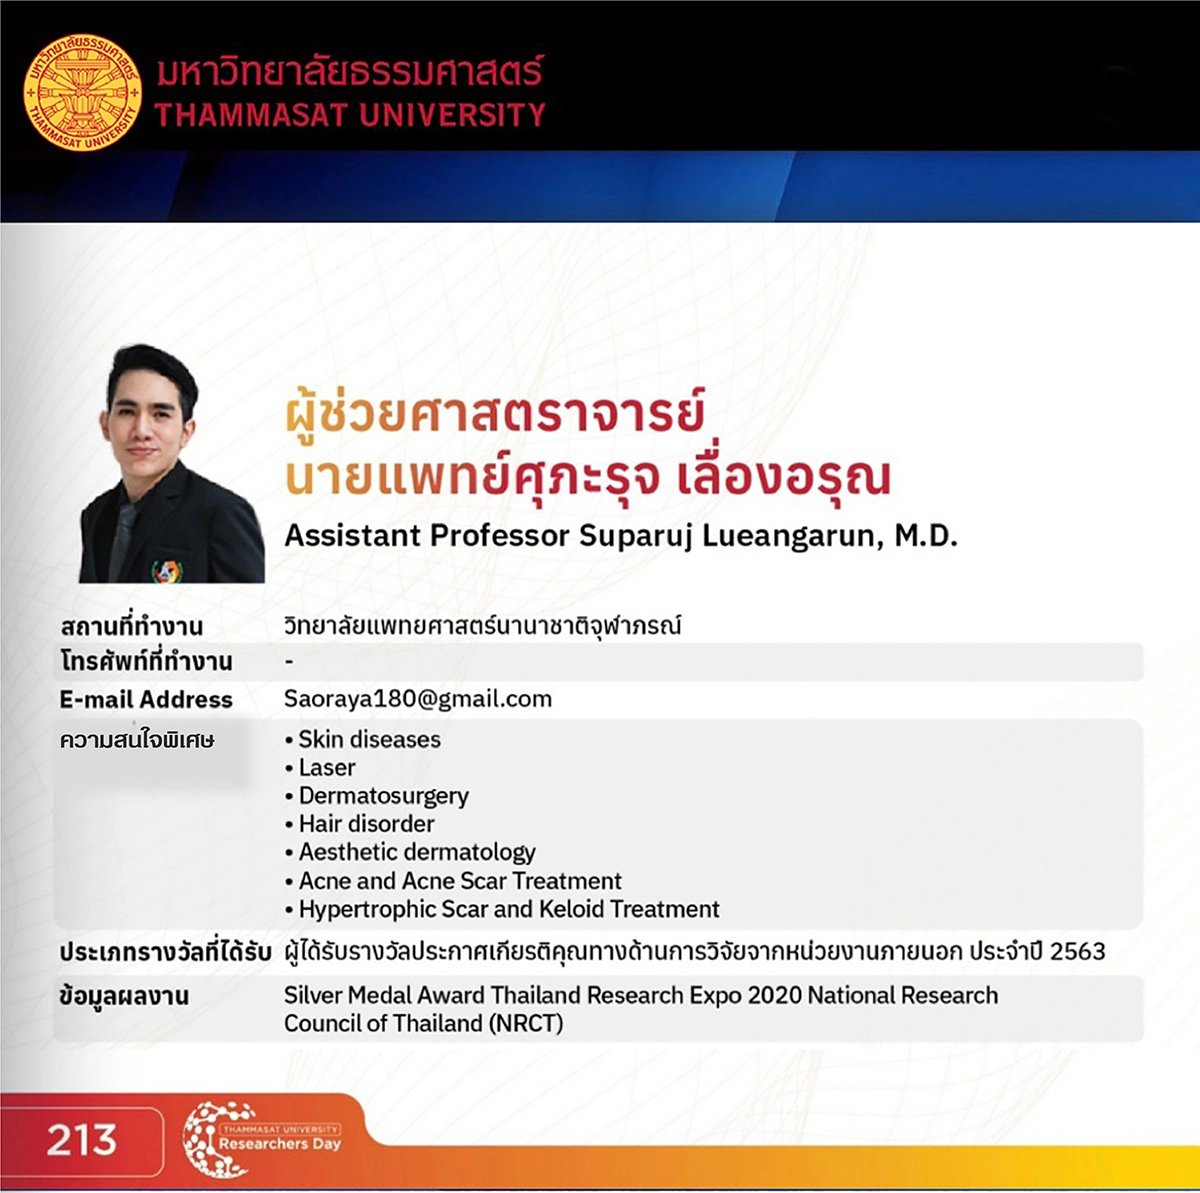 แพทย์ผู้ดูแลรักษา ผู้ช่วยศาสตราจารย์ นายแพทย์ศุภะรุจ เลื่องอรุณ (หมอรุจ) Assistant Professor Suparuj Lueangarun, MD (Dr. Ruj)